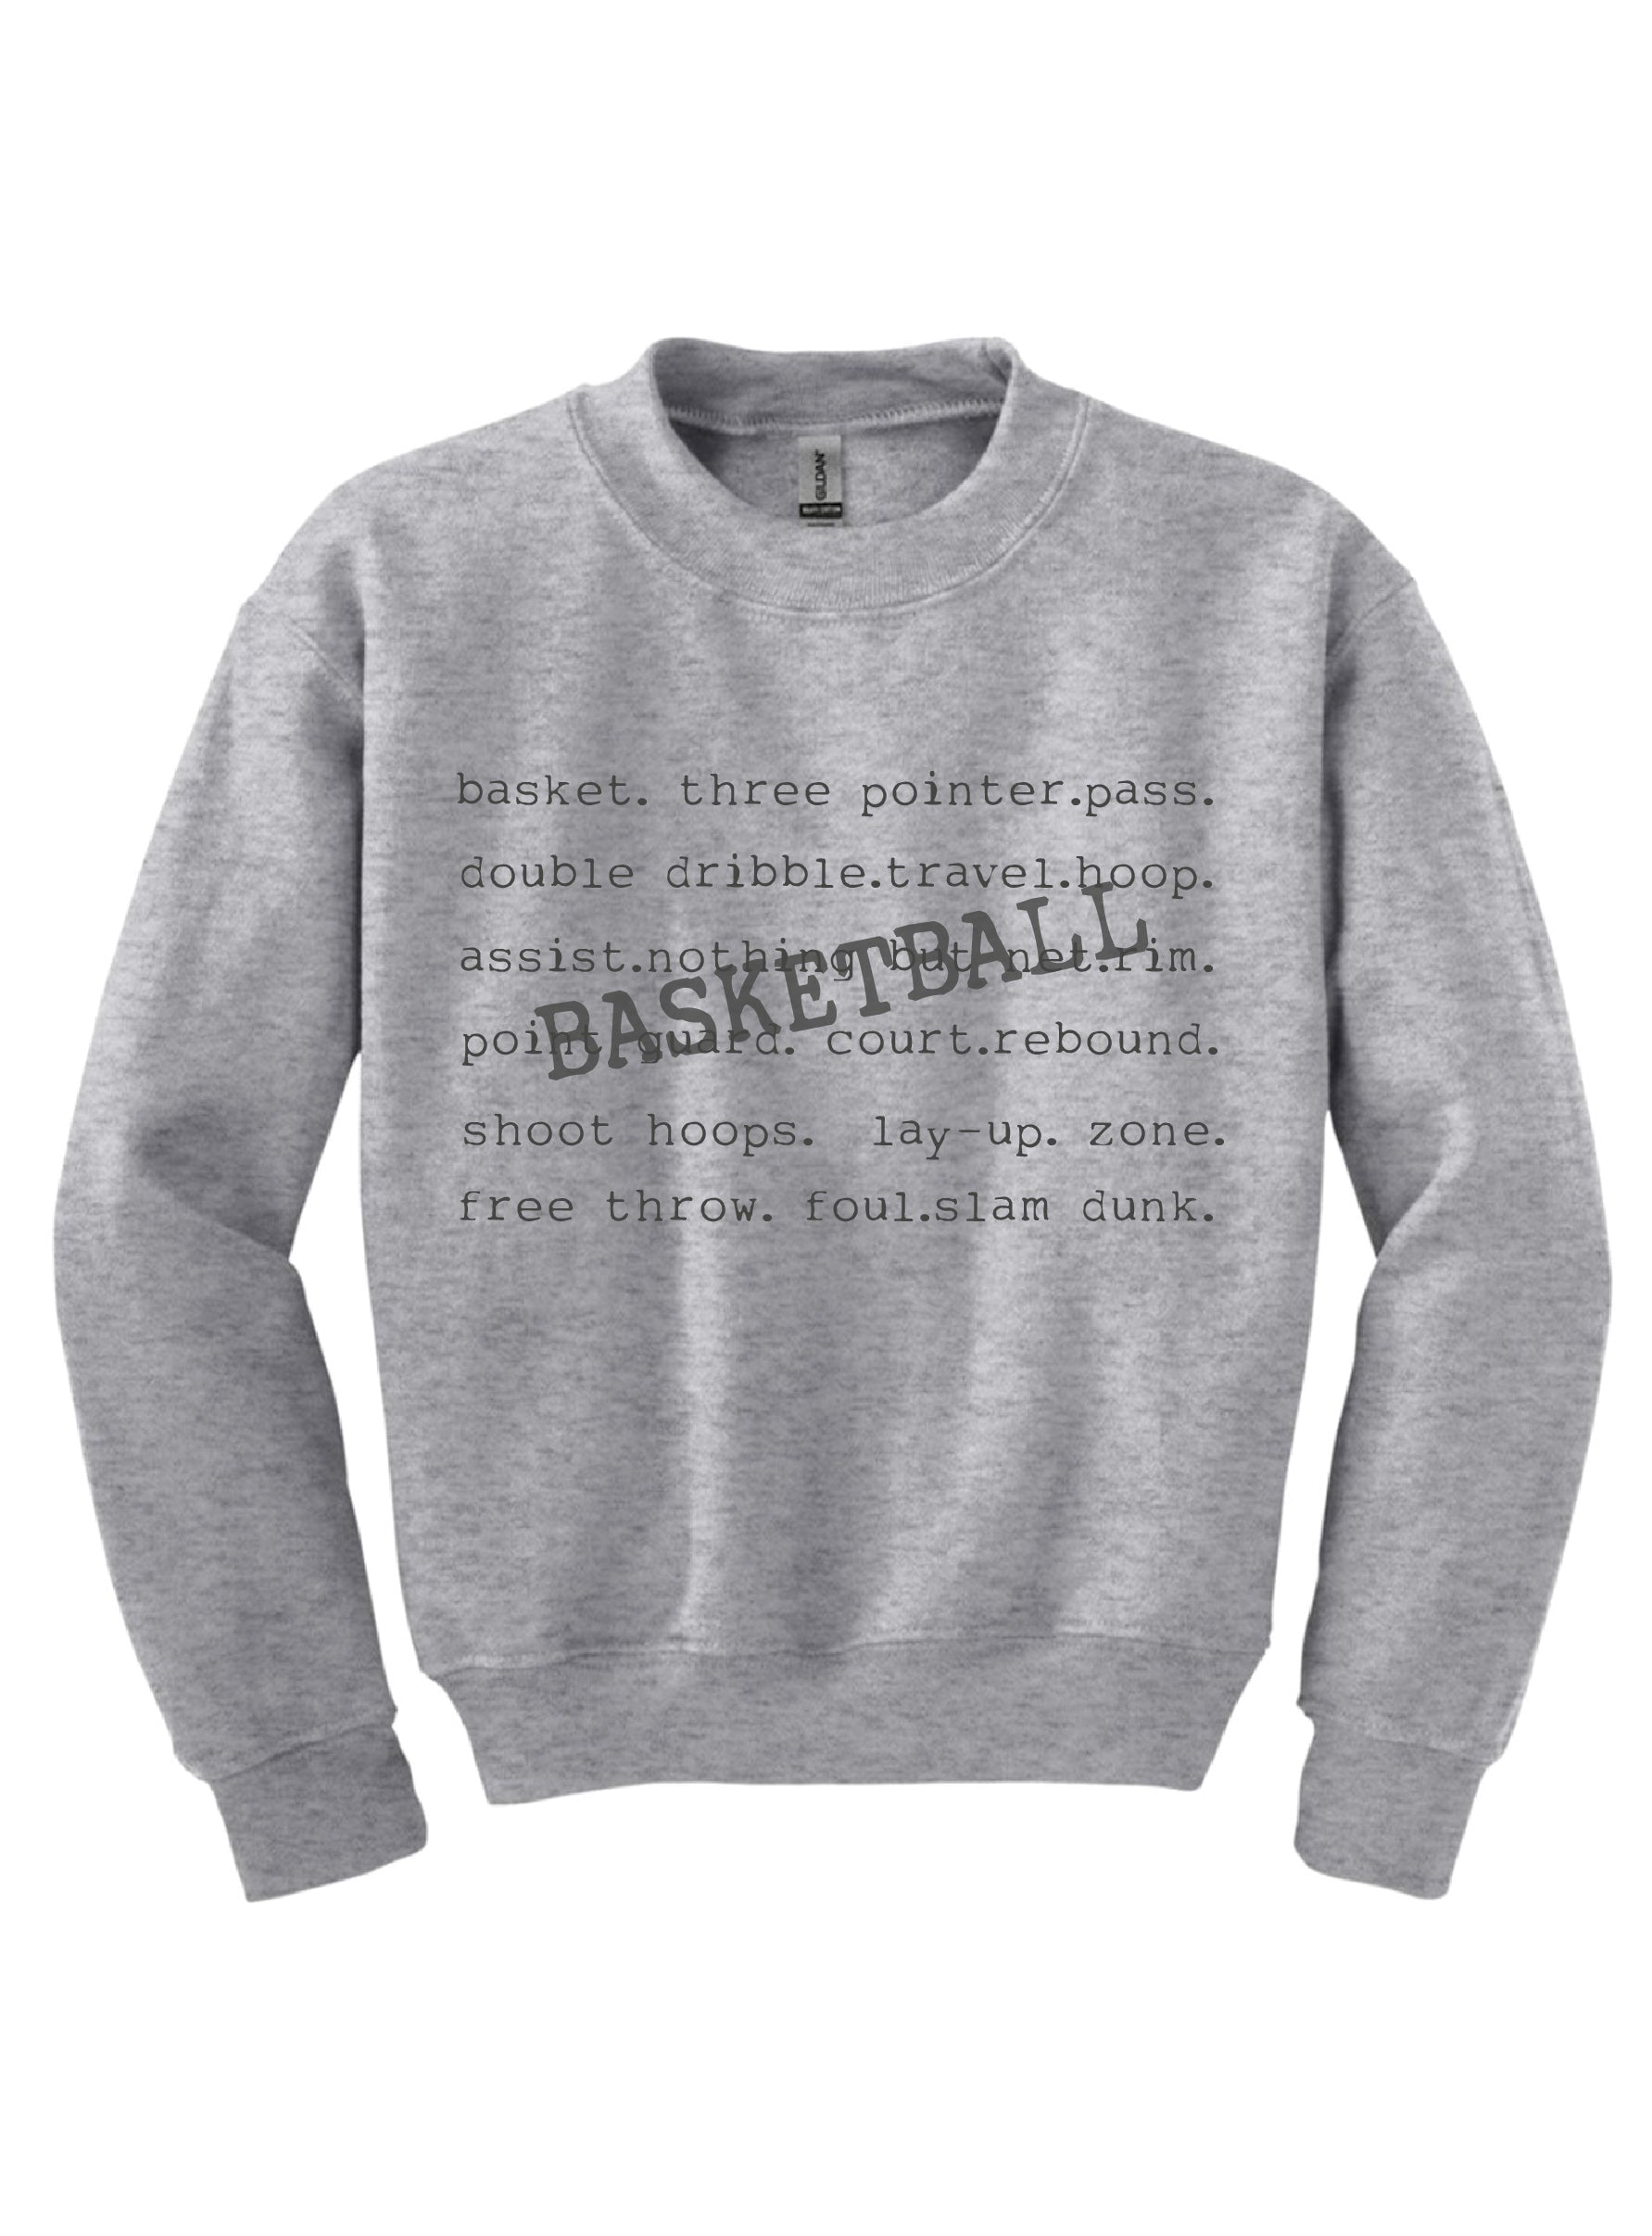 Basketball words youth sweatshirt Sports collection Gildan 18000B youth fleece 